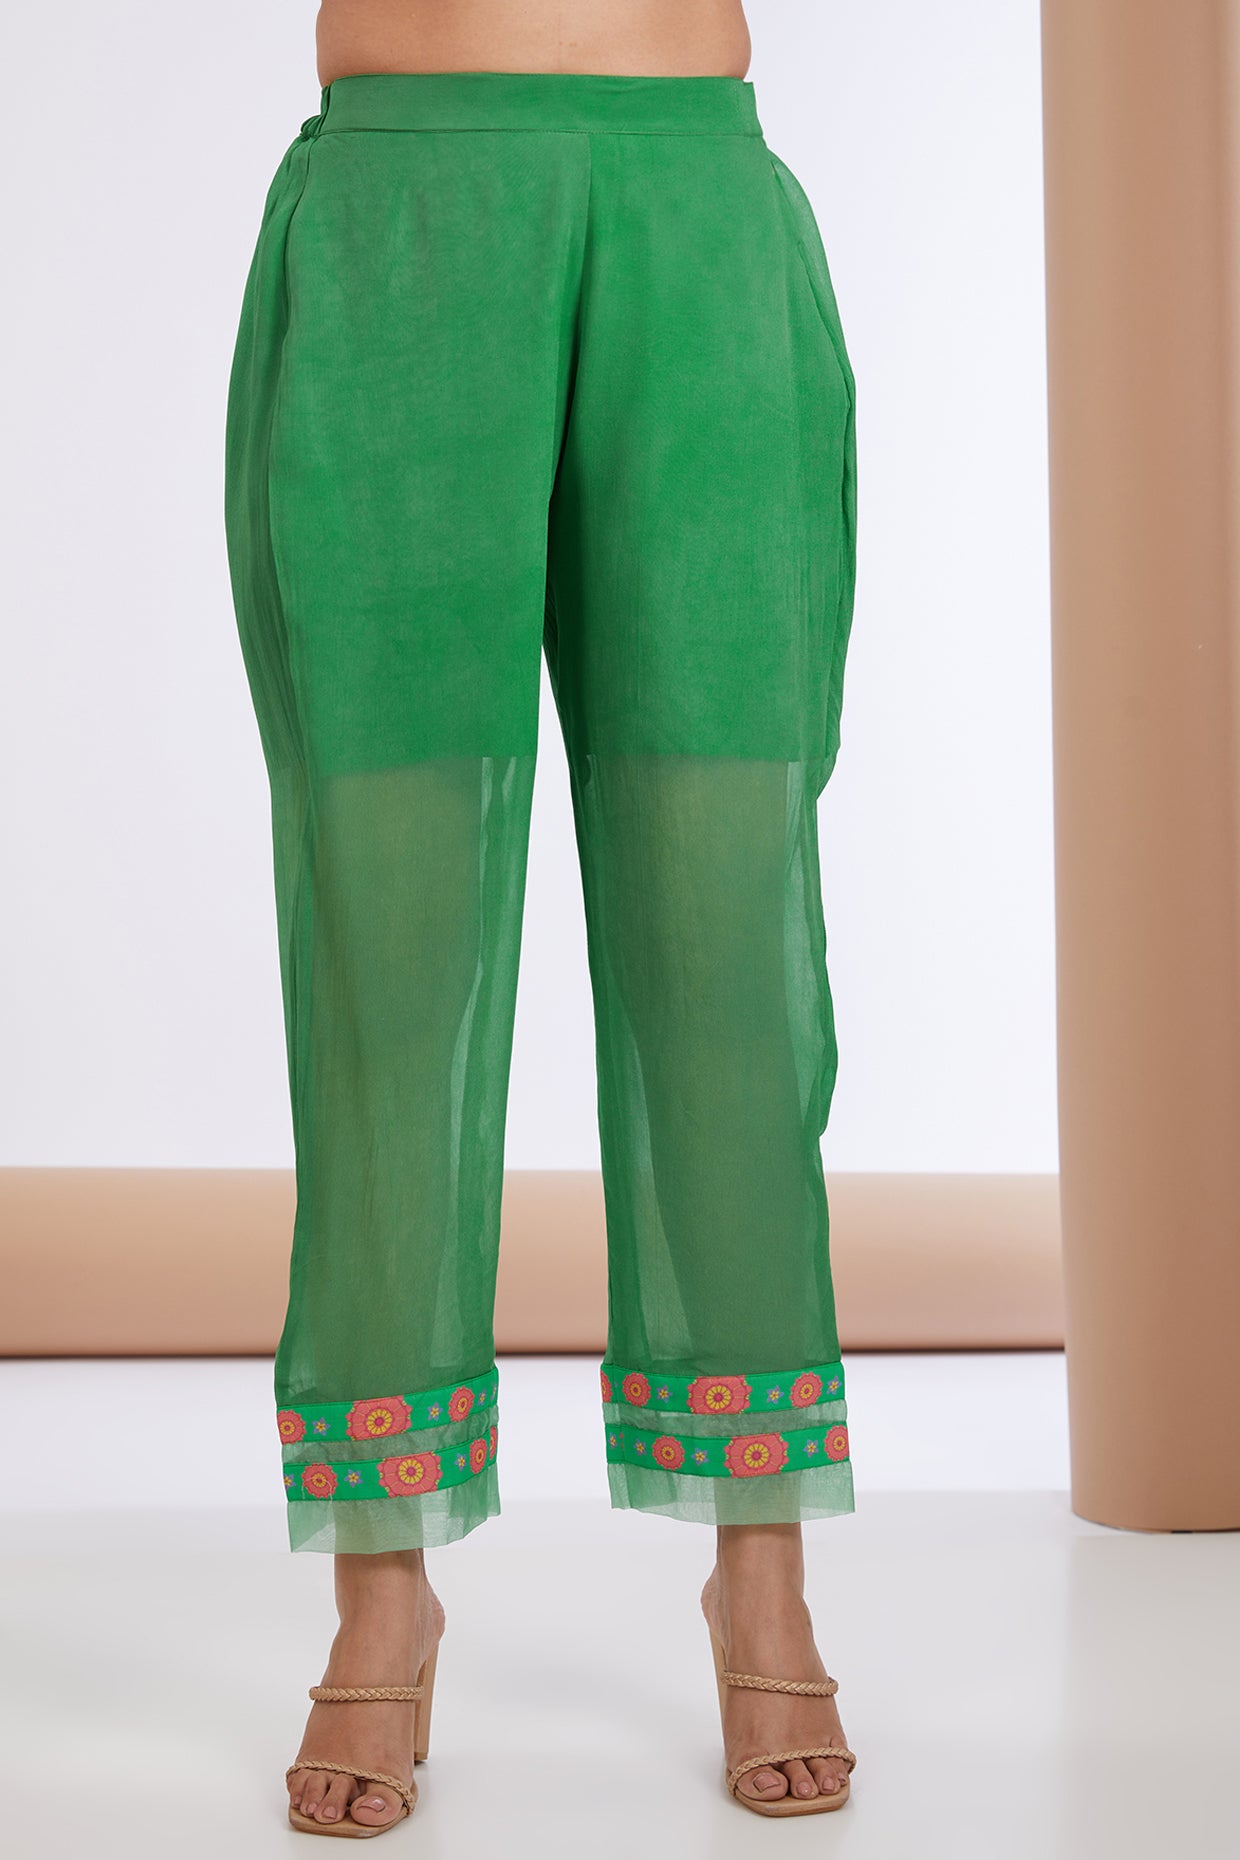 Green Georgette Floral Print Embellished Anarkali Pant Set